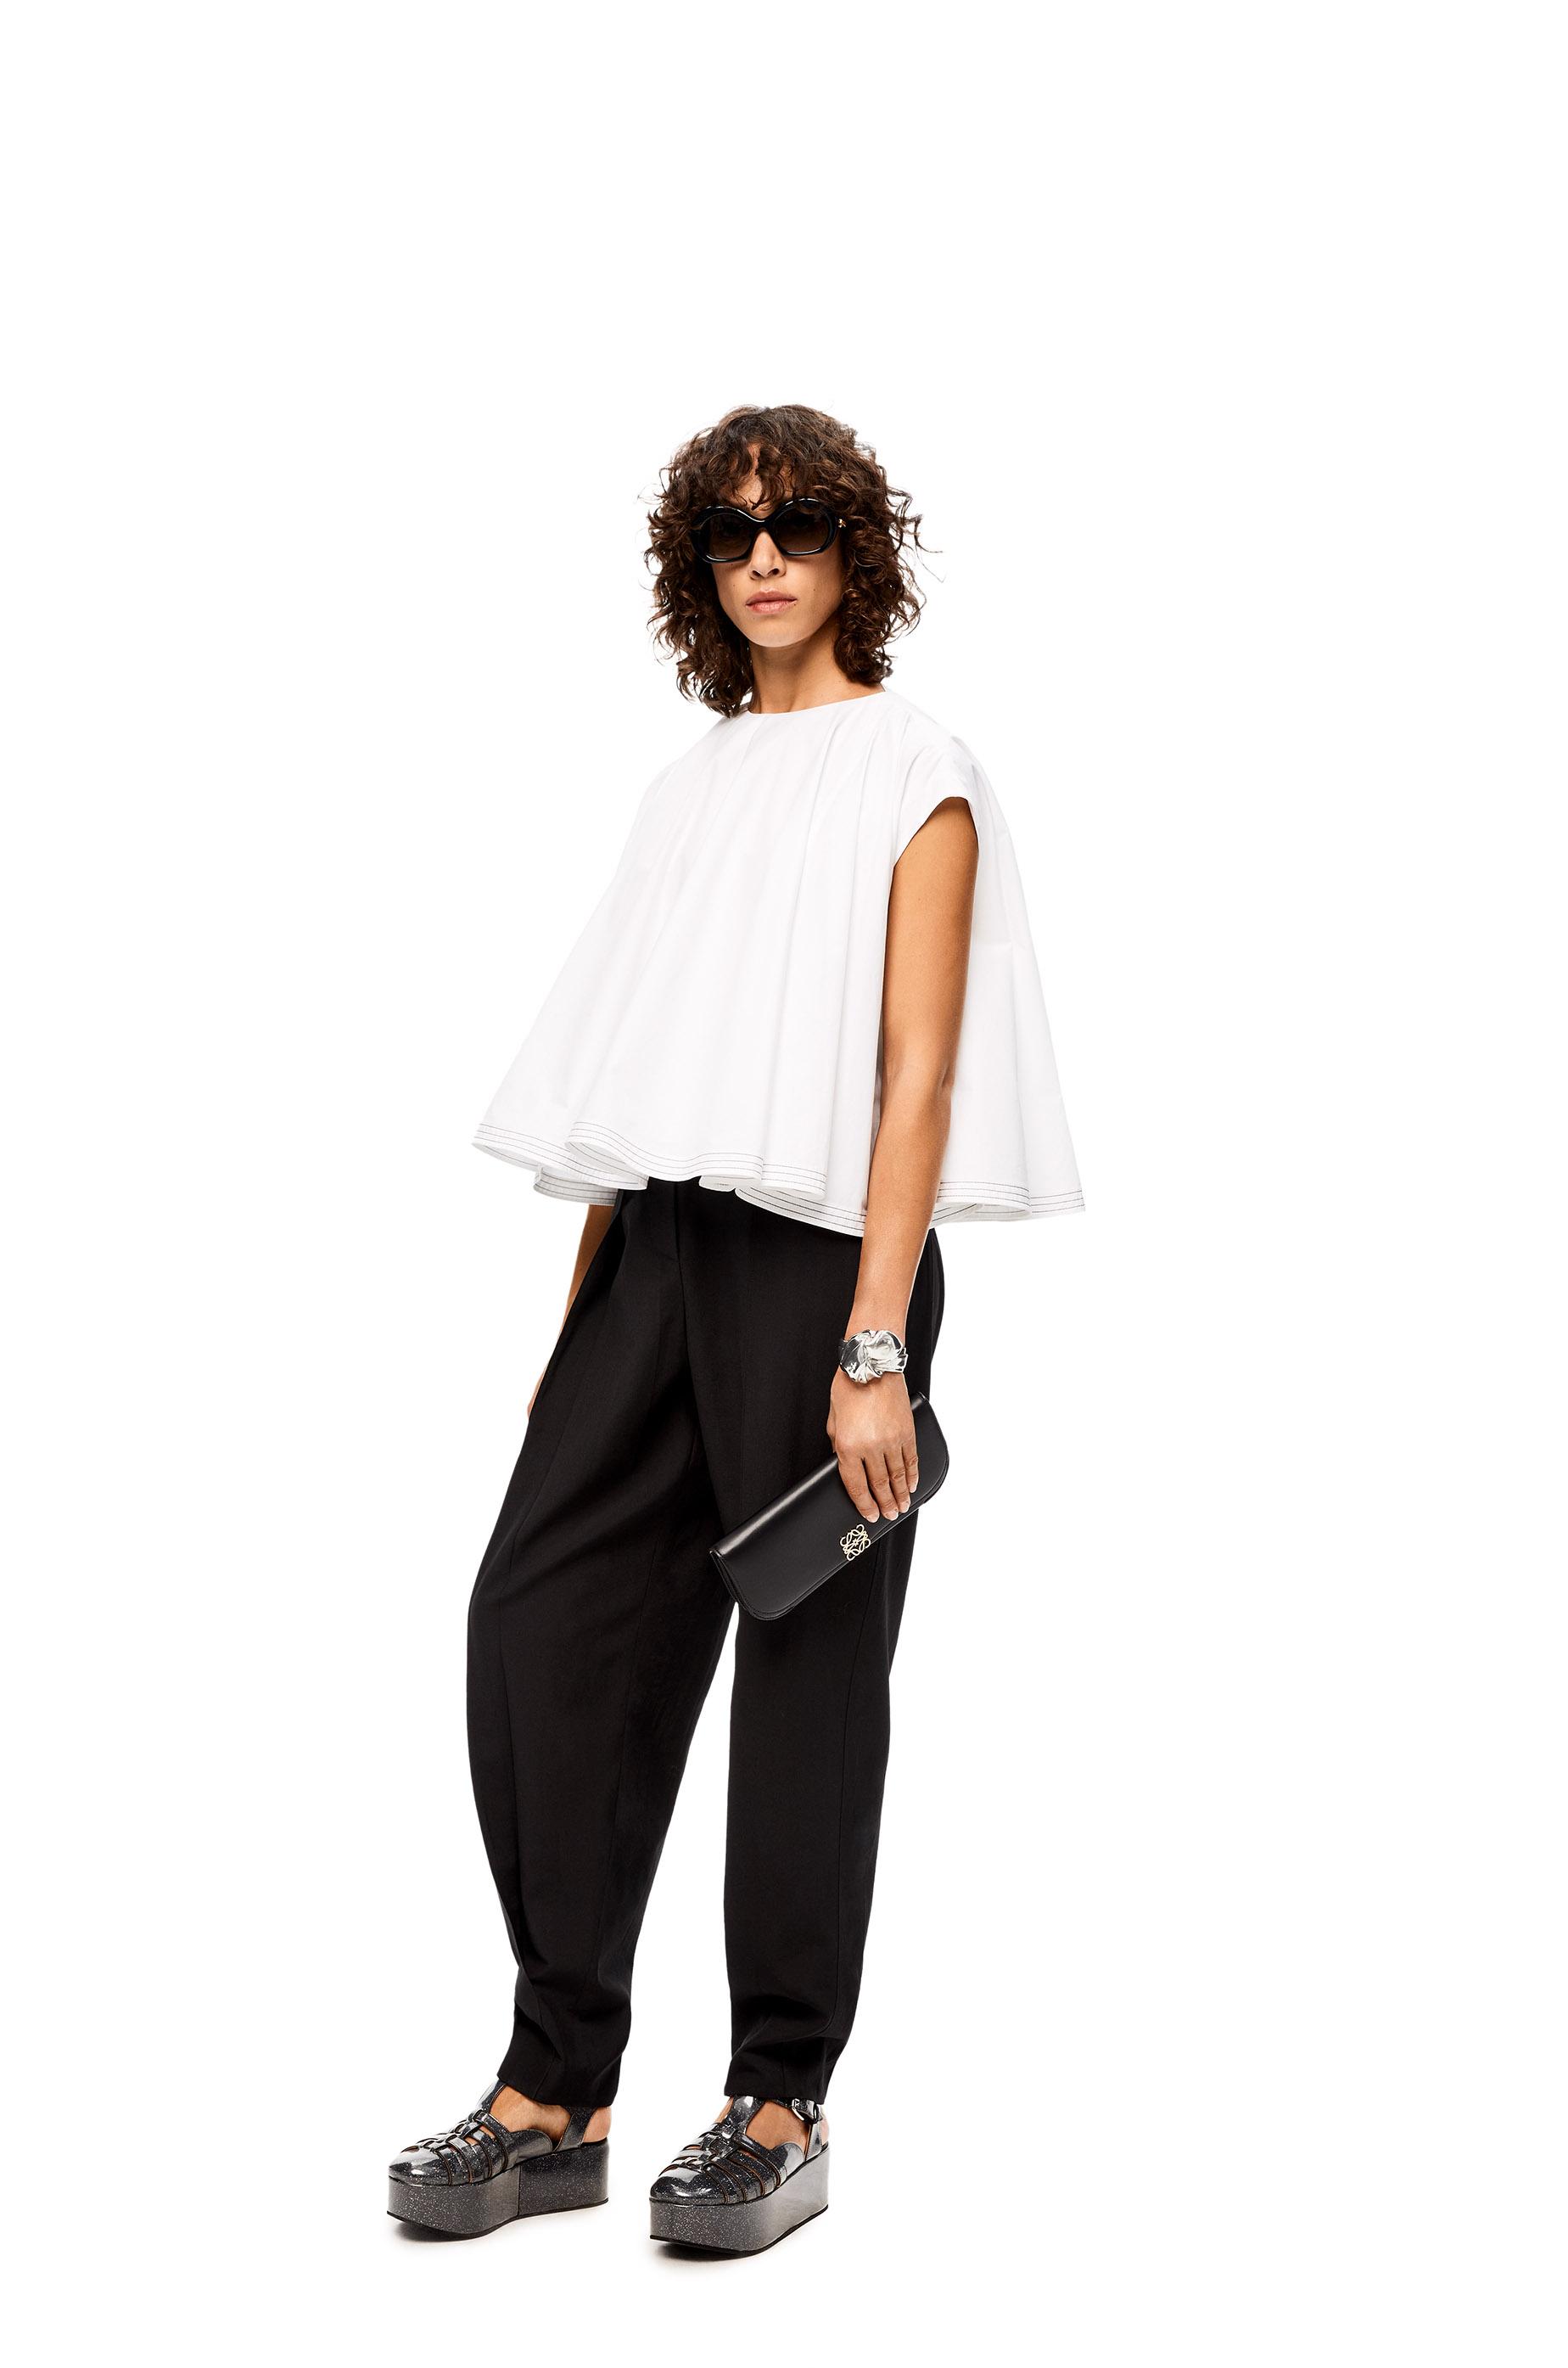 Loewe Luxury Goya Long Clutch Bag In Silk Calfskin For Women in 